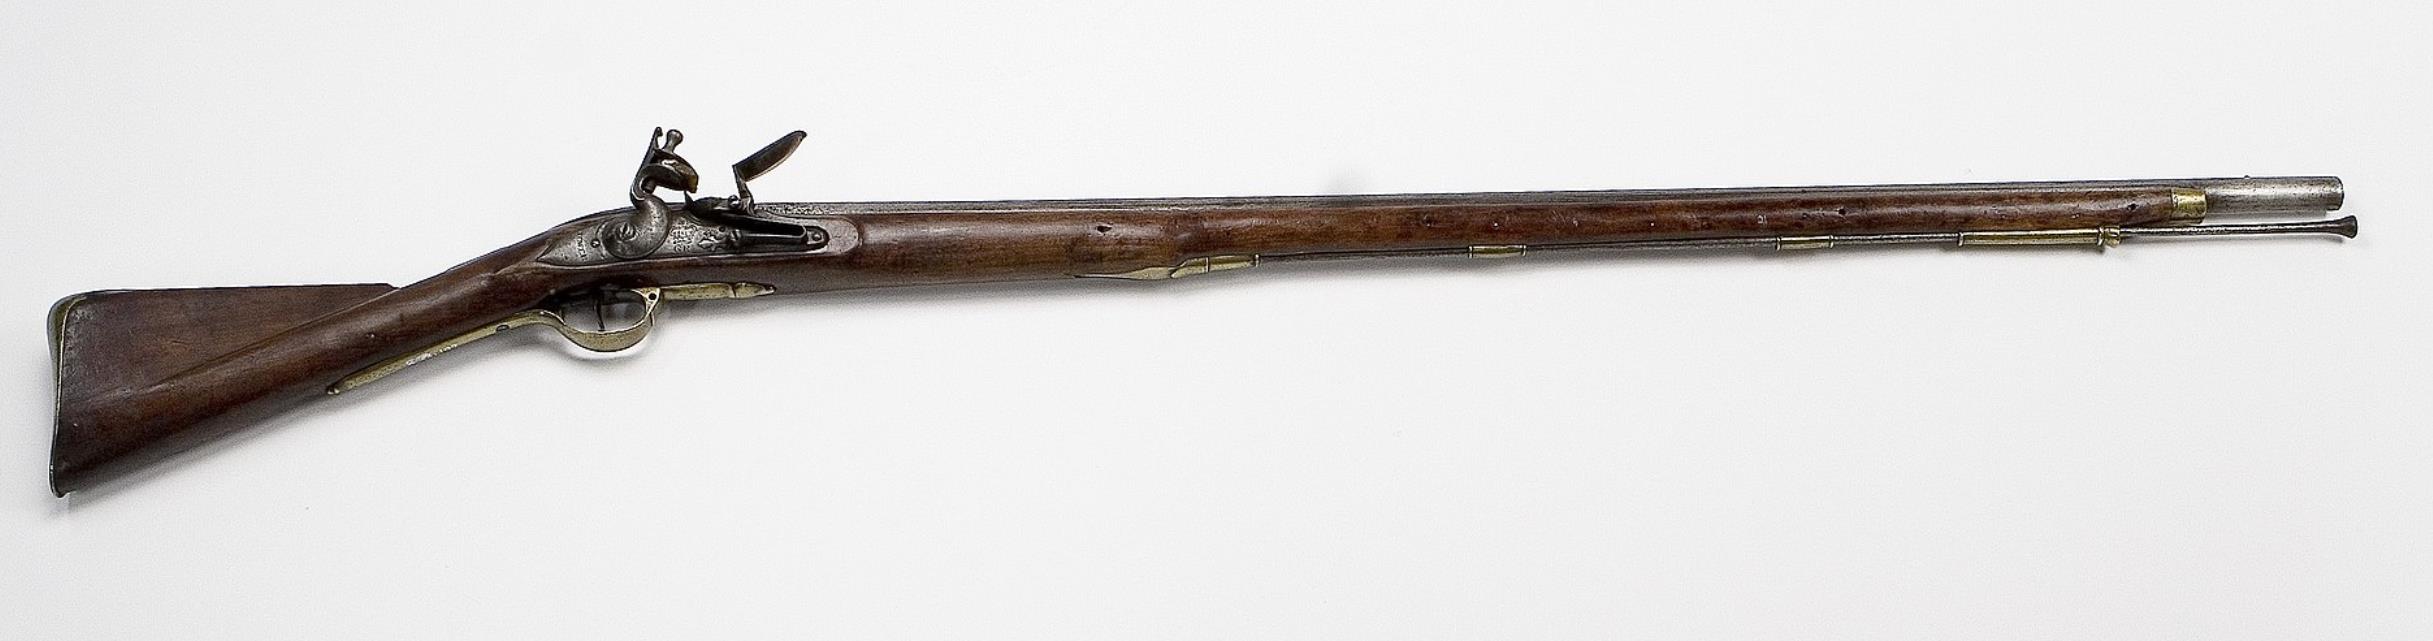 m1941,m1941式约翰逊半自动步枪